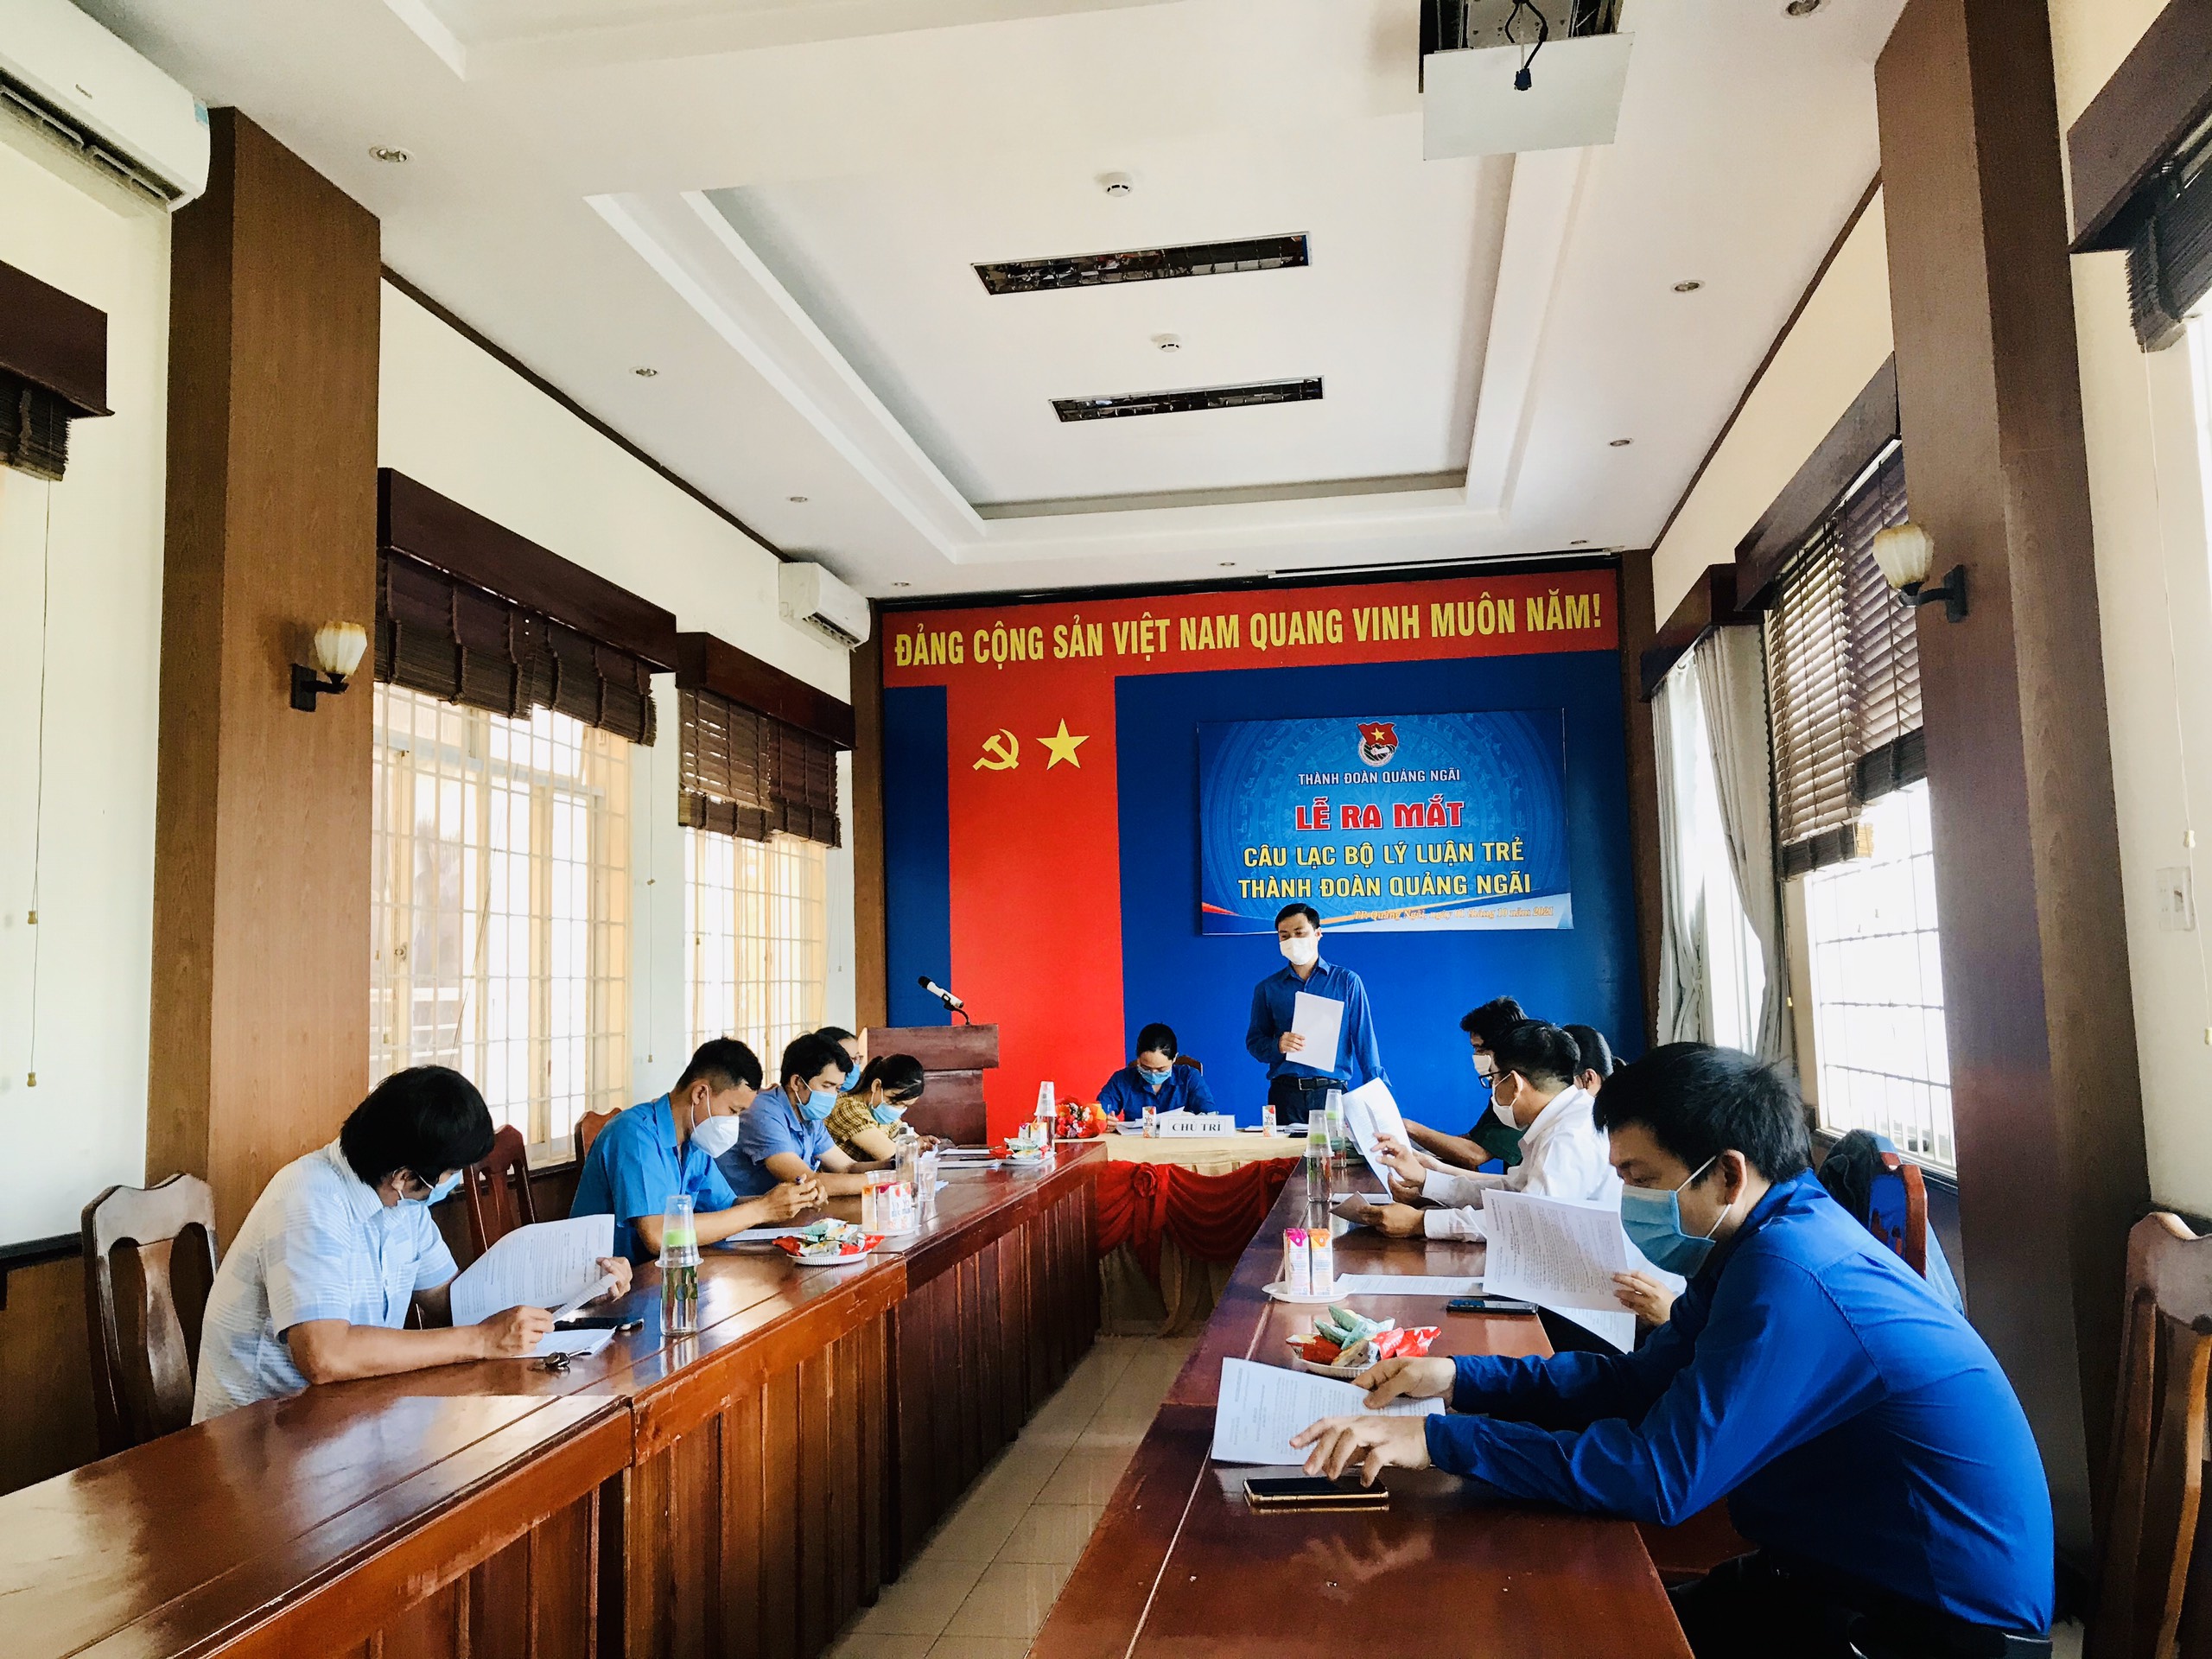 Thành phố Quảng Ngãi: Tổ chức Lễ ra mắt CLB lý luận trẻ Thành đoàn Quảng Ngãi